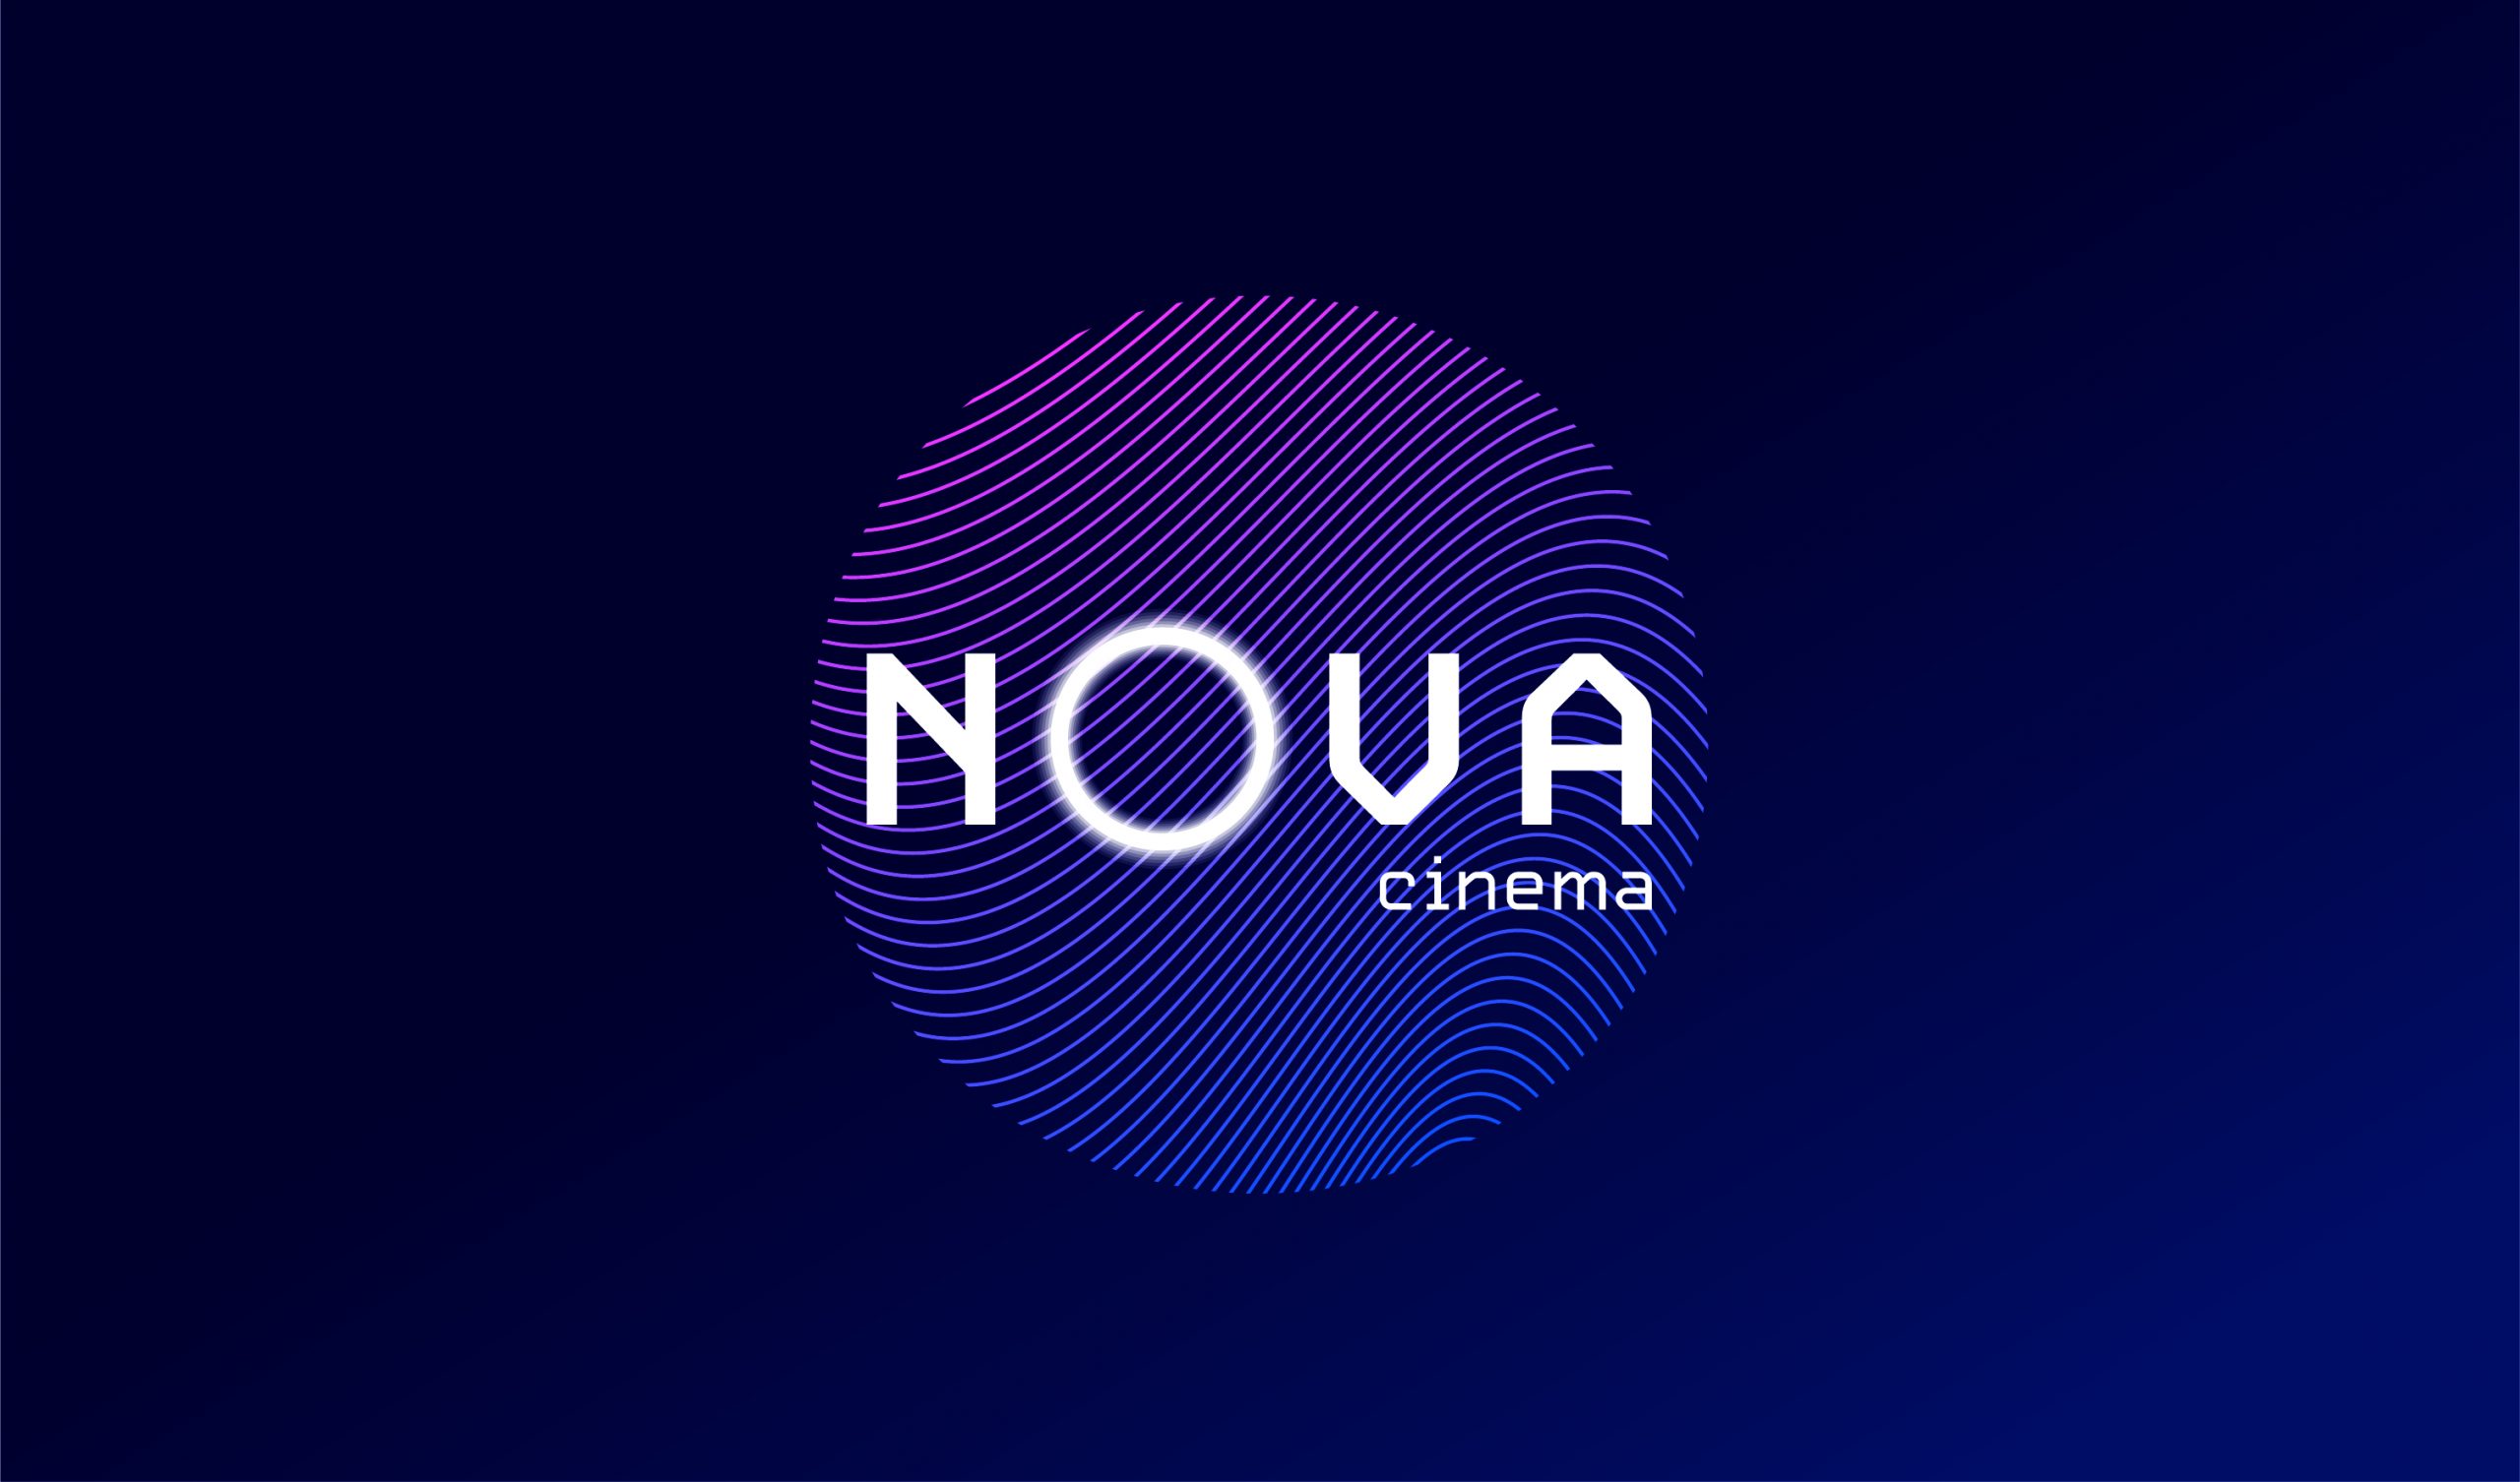 The Nova Cinema